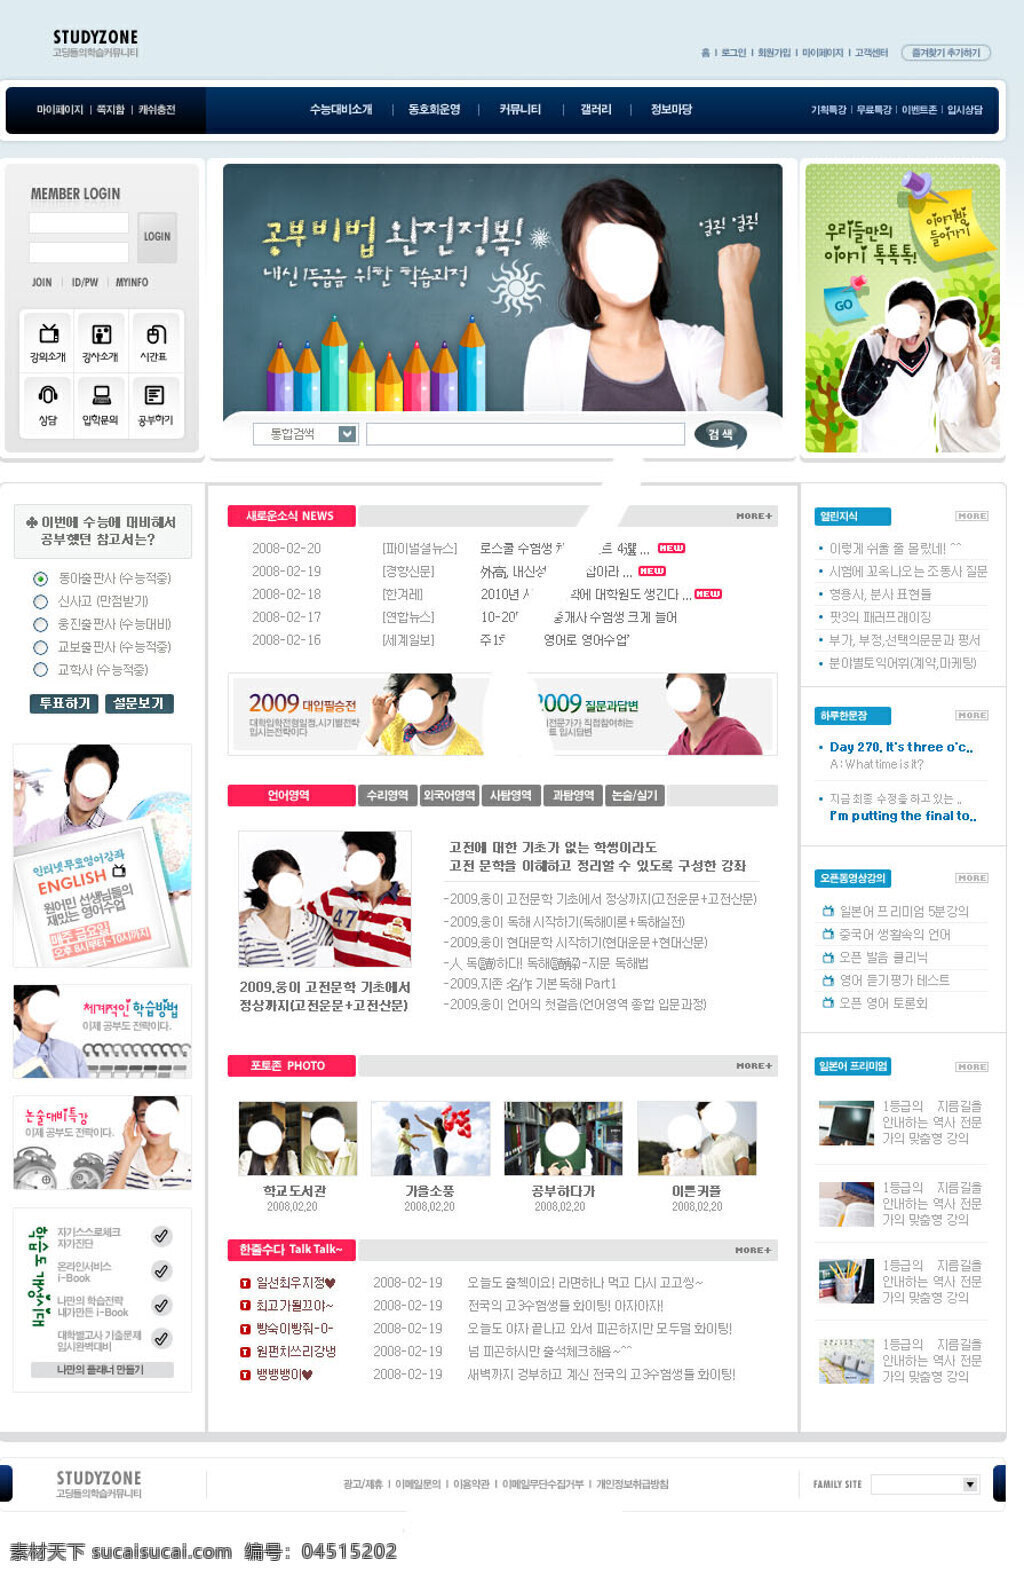 学院社区论坛 韩国 模板 网站 分层 社区网站设计 学院网站页面 界面设计 ui设计 网页版式 版式设计 网站焦点图 白色